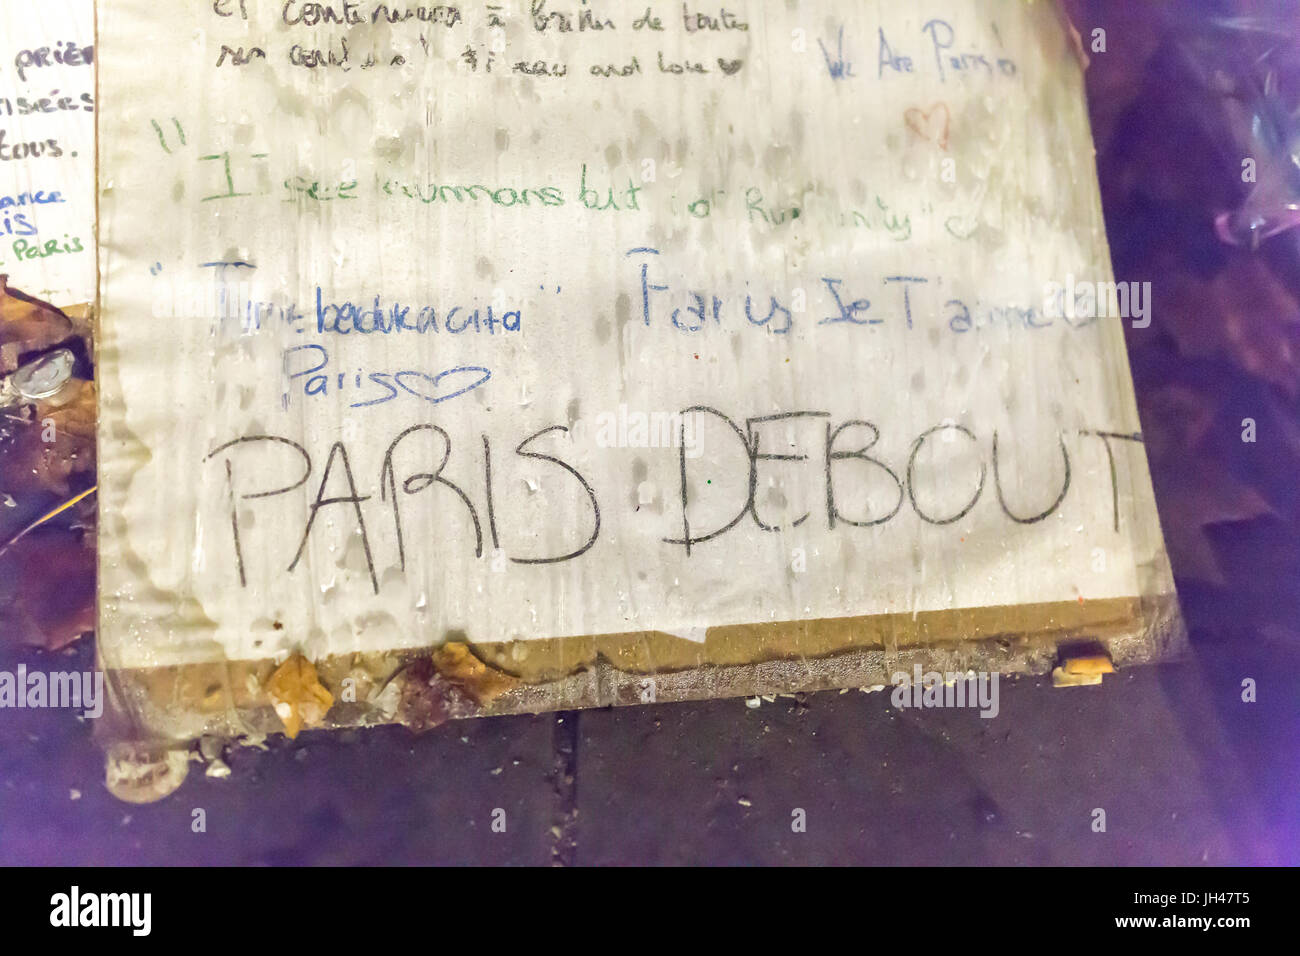 Hinweis: Die ständigen Paris, Paris debout. Spontane Hommage an die Opfer der Terroranschläge in Paris, den 13. November 2015. Stockfoto